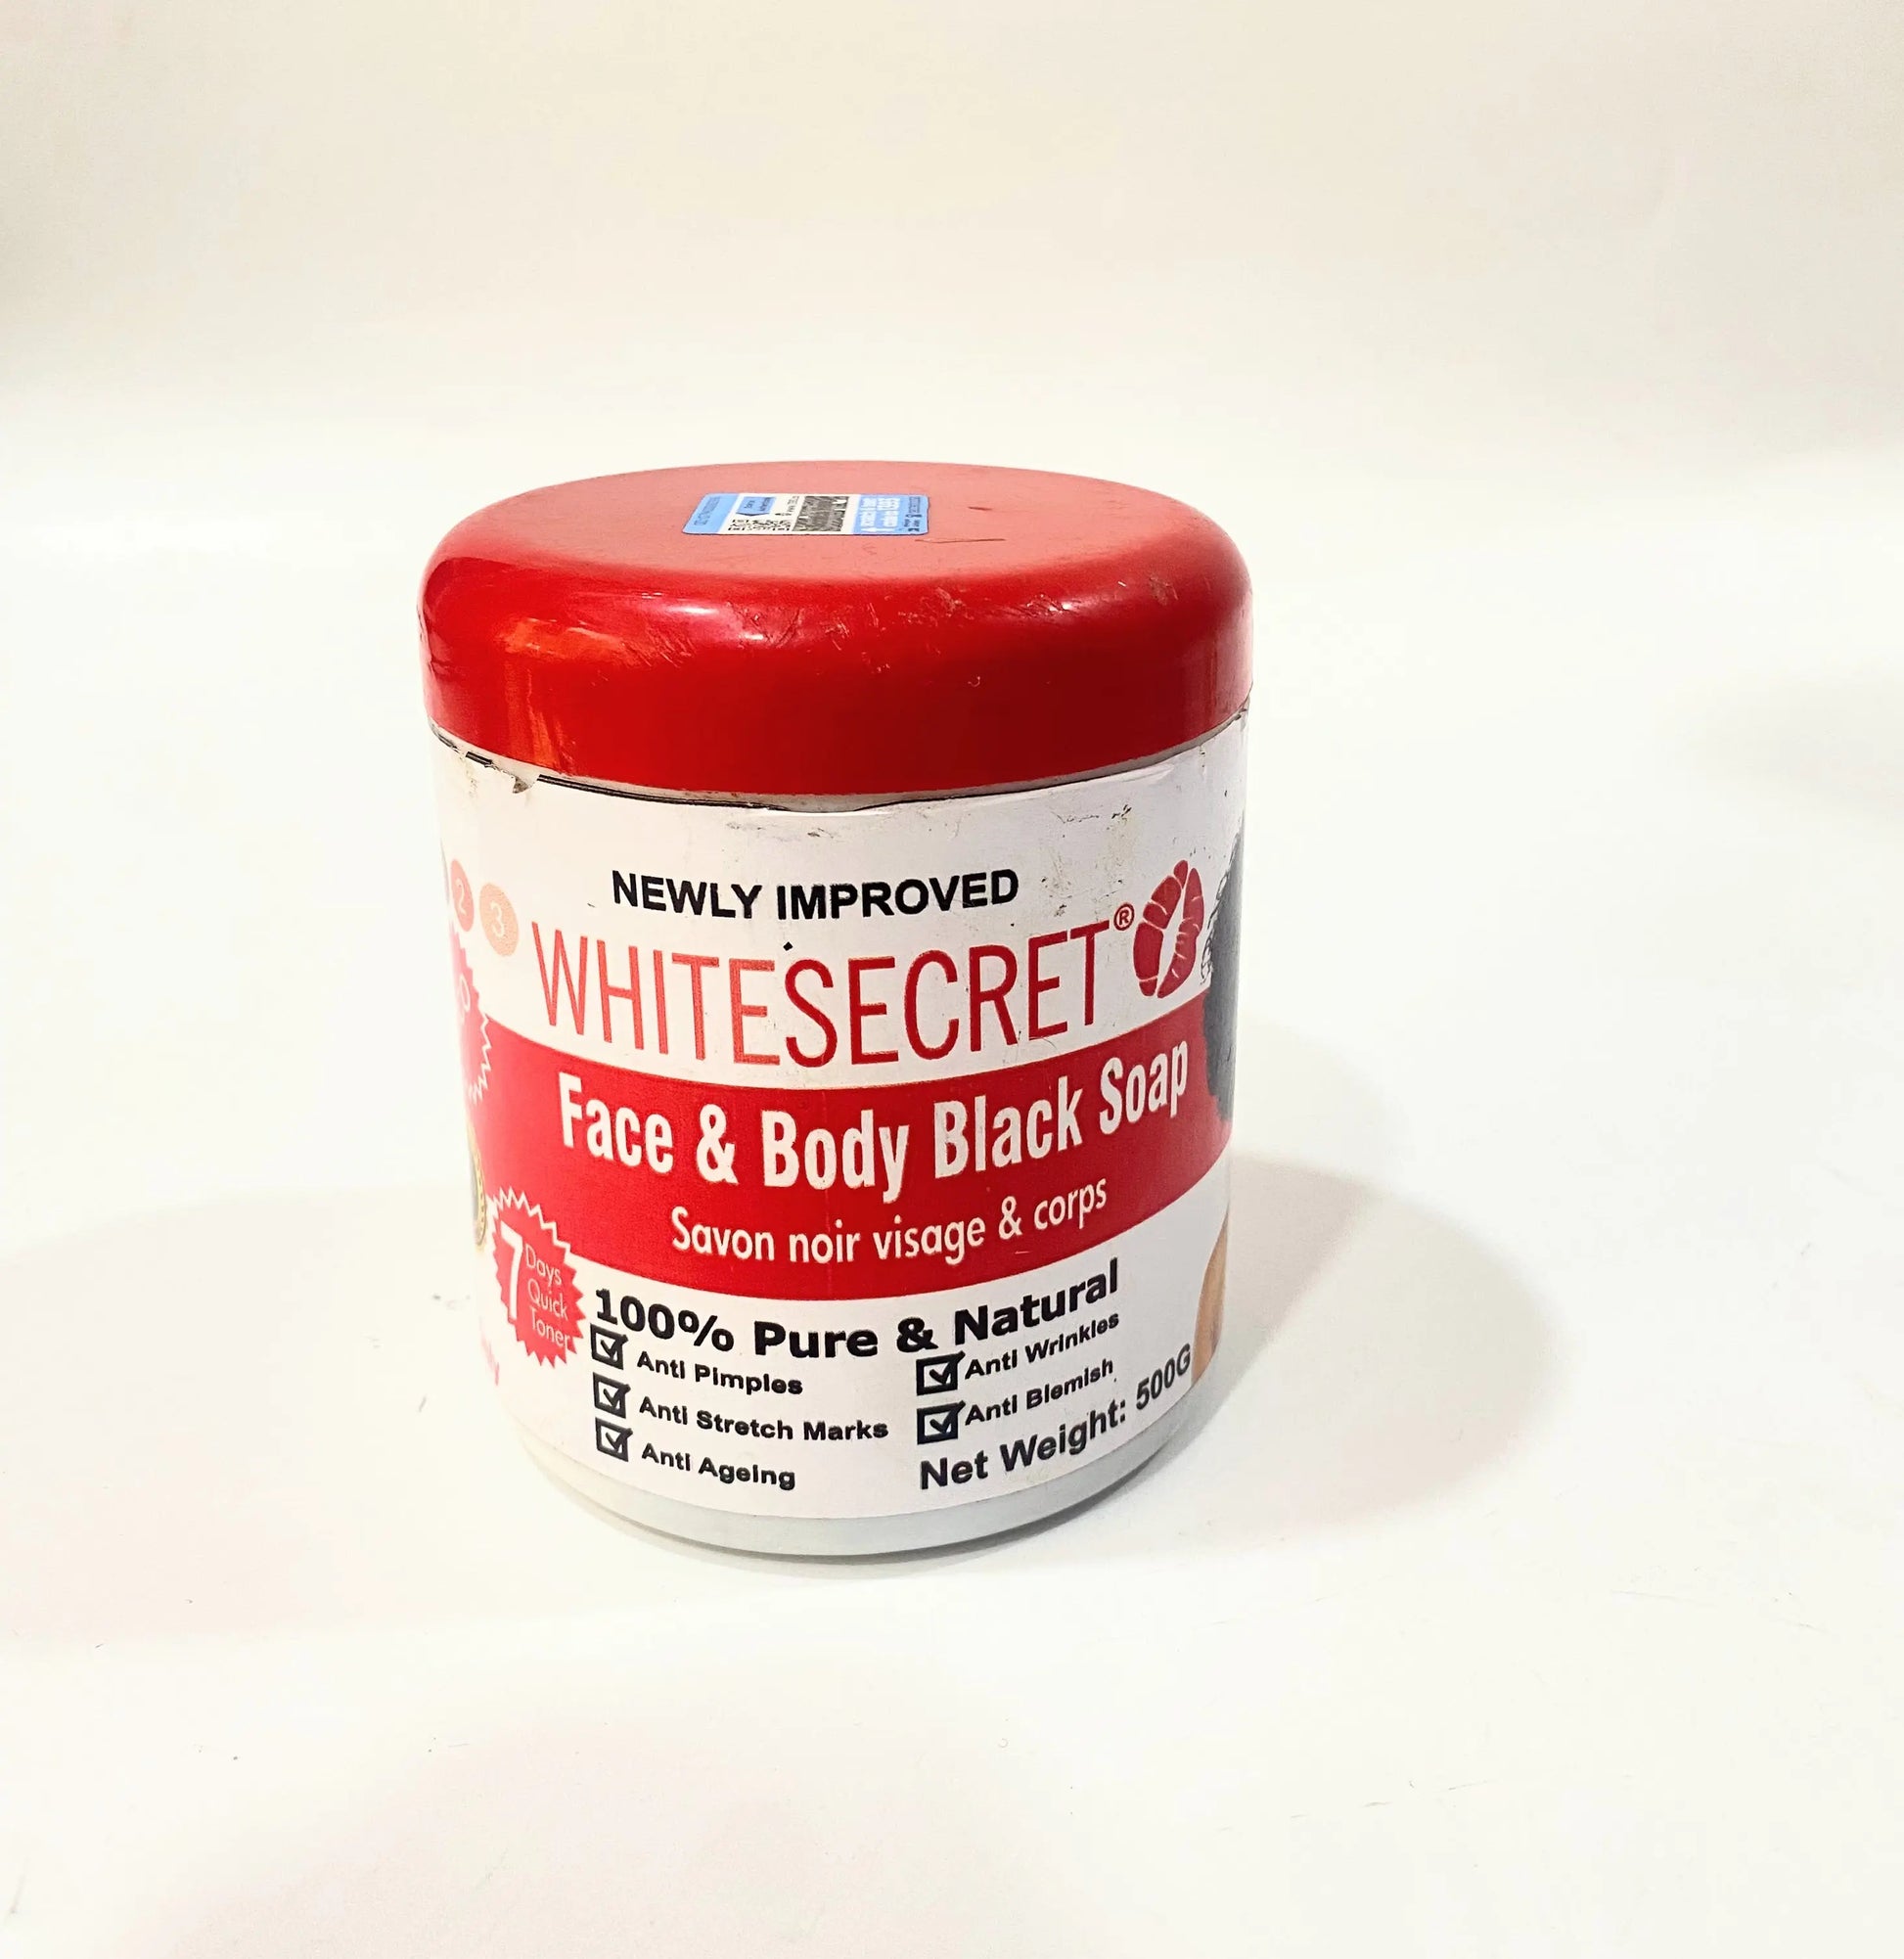 White Secret Face and Body Black Soap La Mimz Beauty & Fashion Store